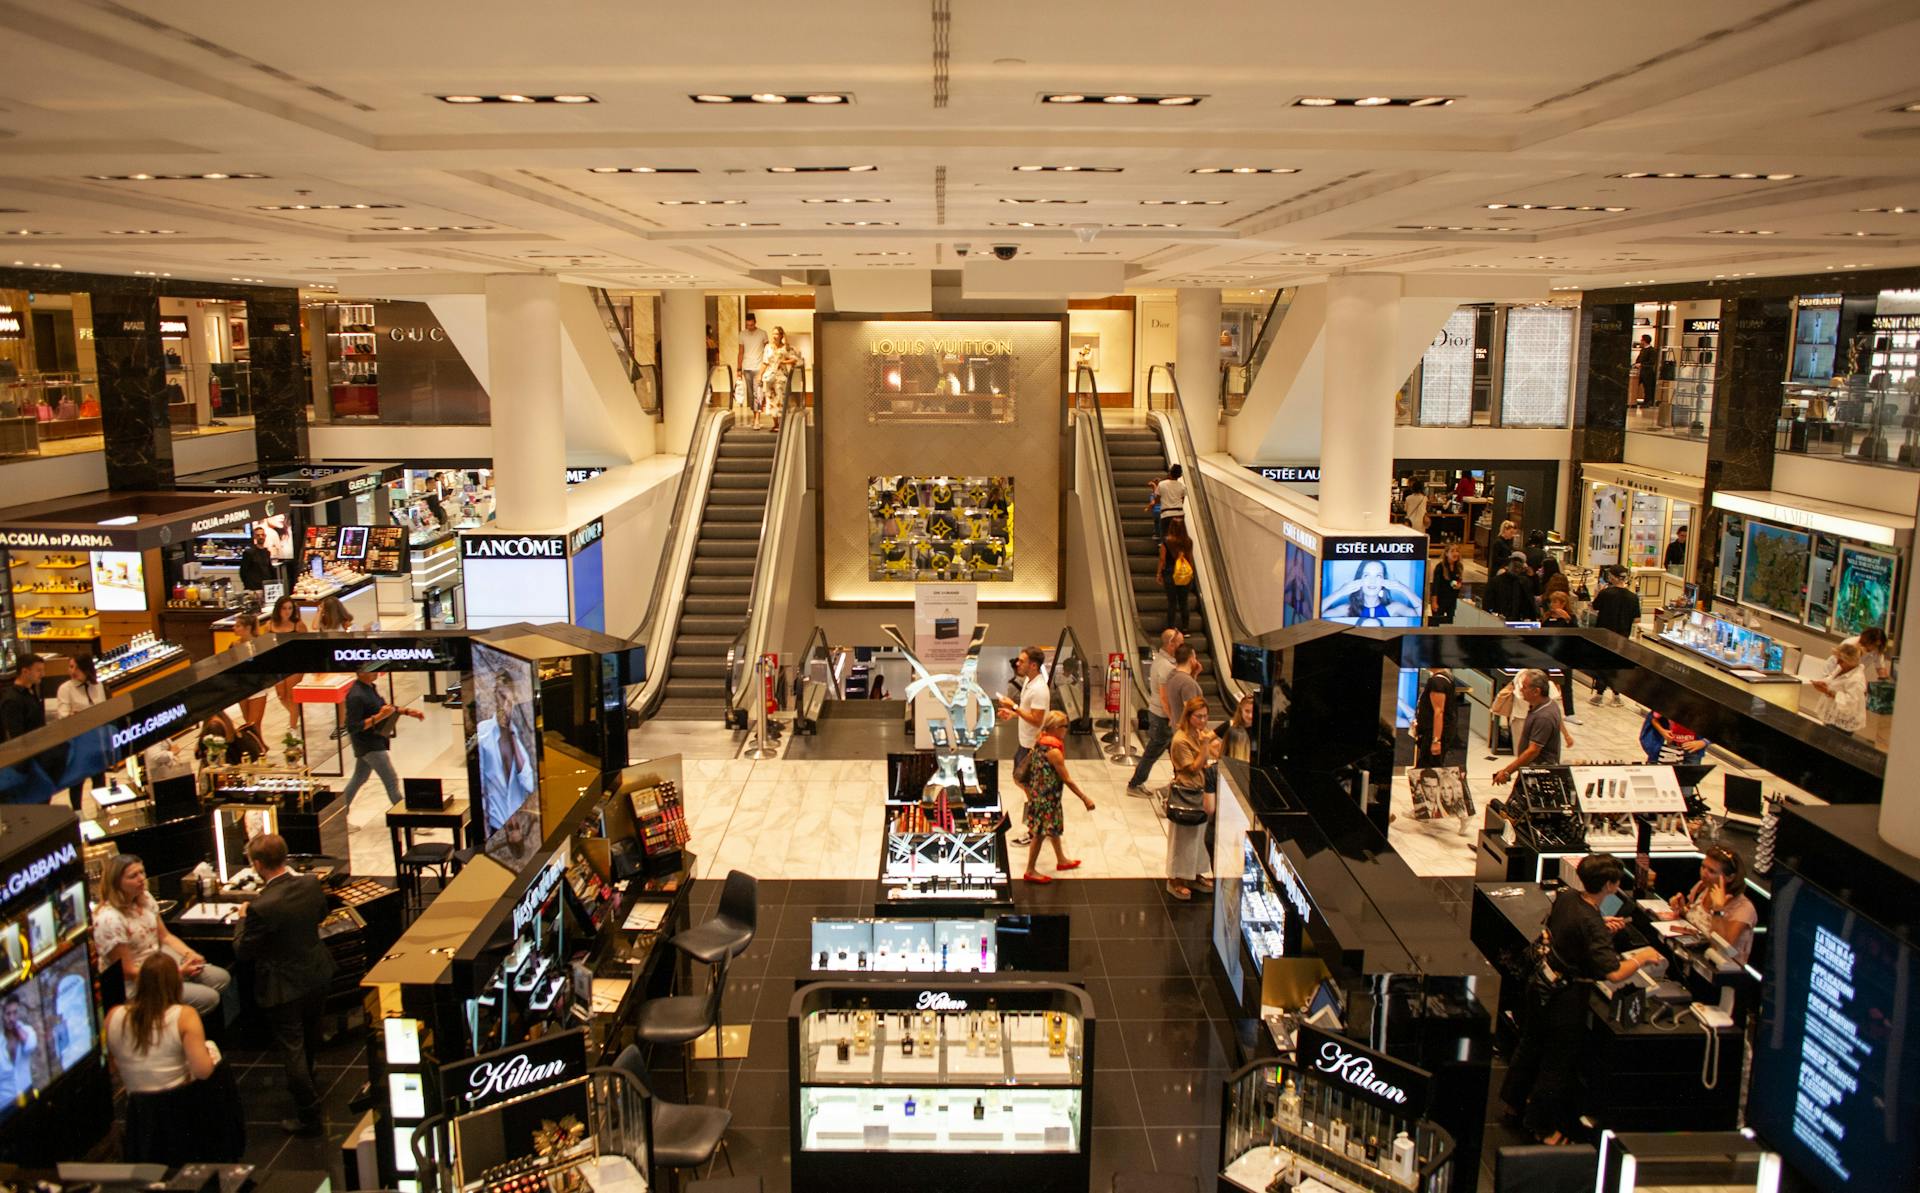 Des personnes à l'intérieur d'un centre commercial | Source : Pexels